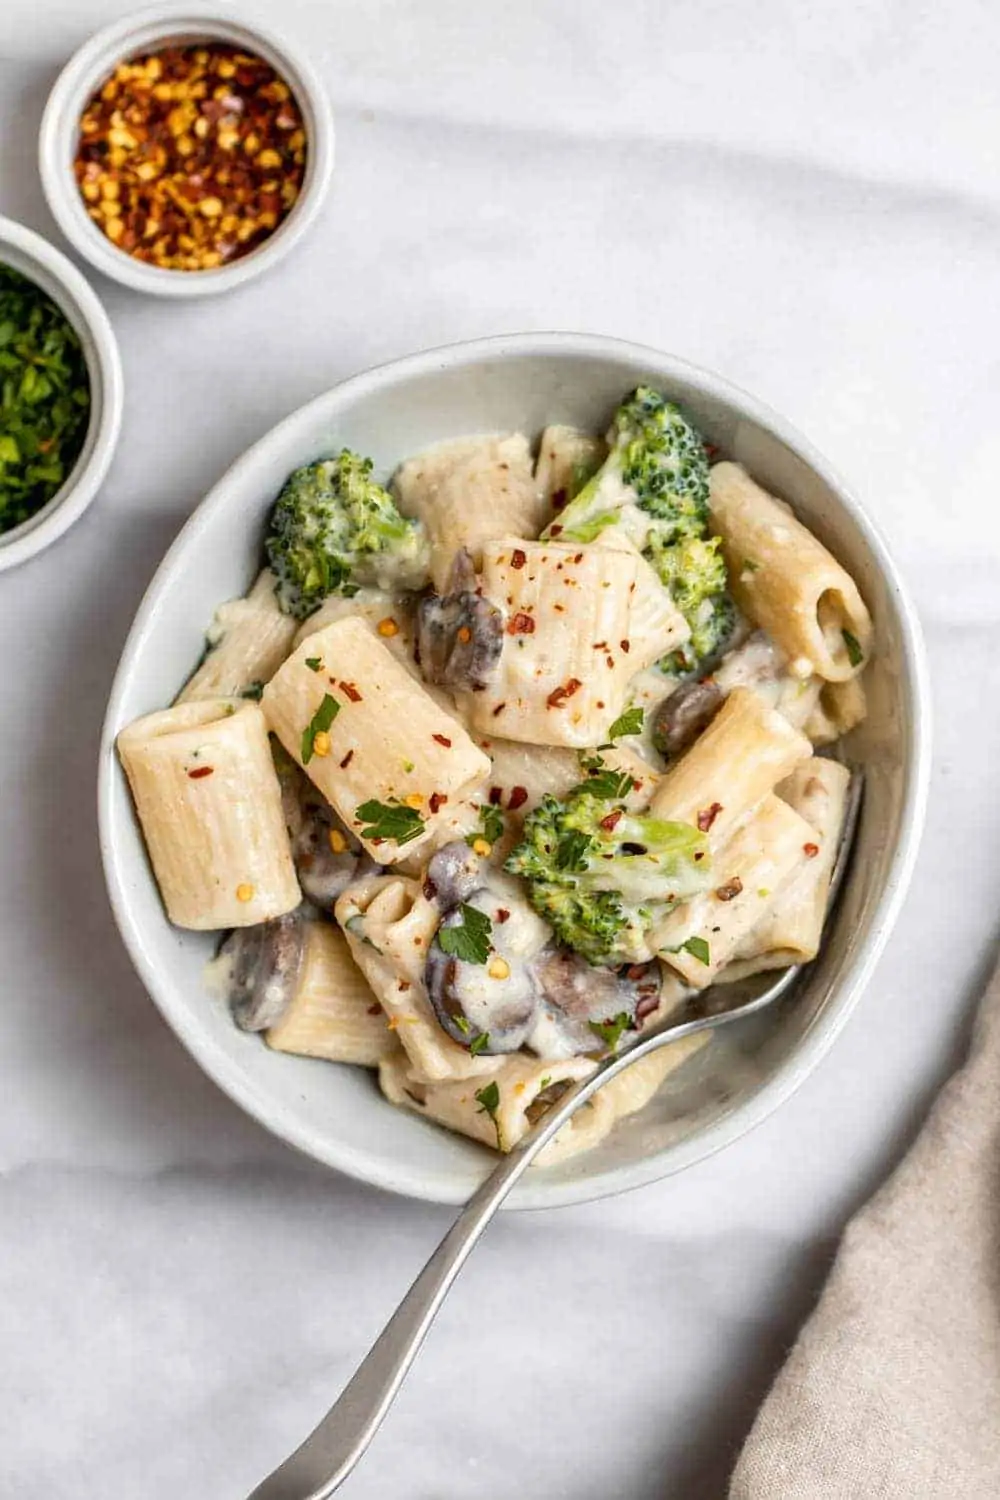 Vegan mushroom broccoli pasta with garlic sauce.